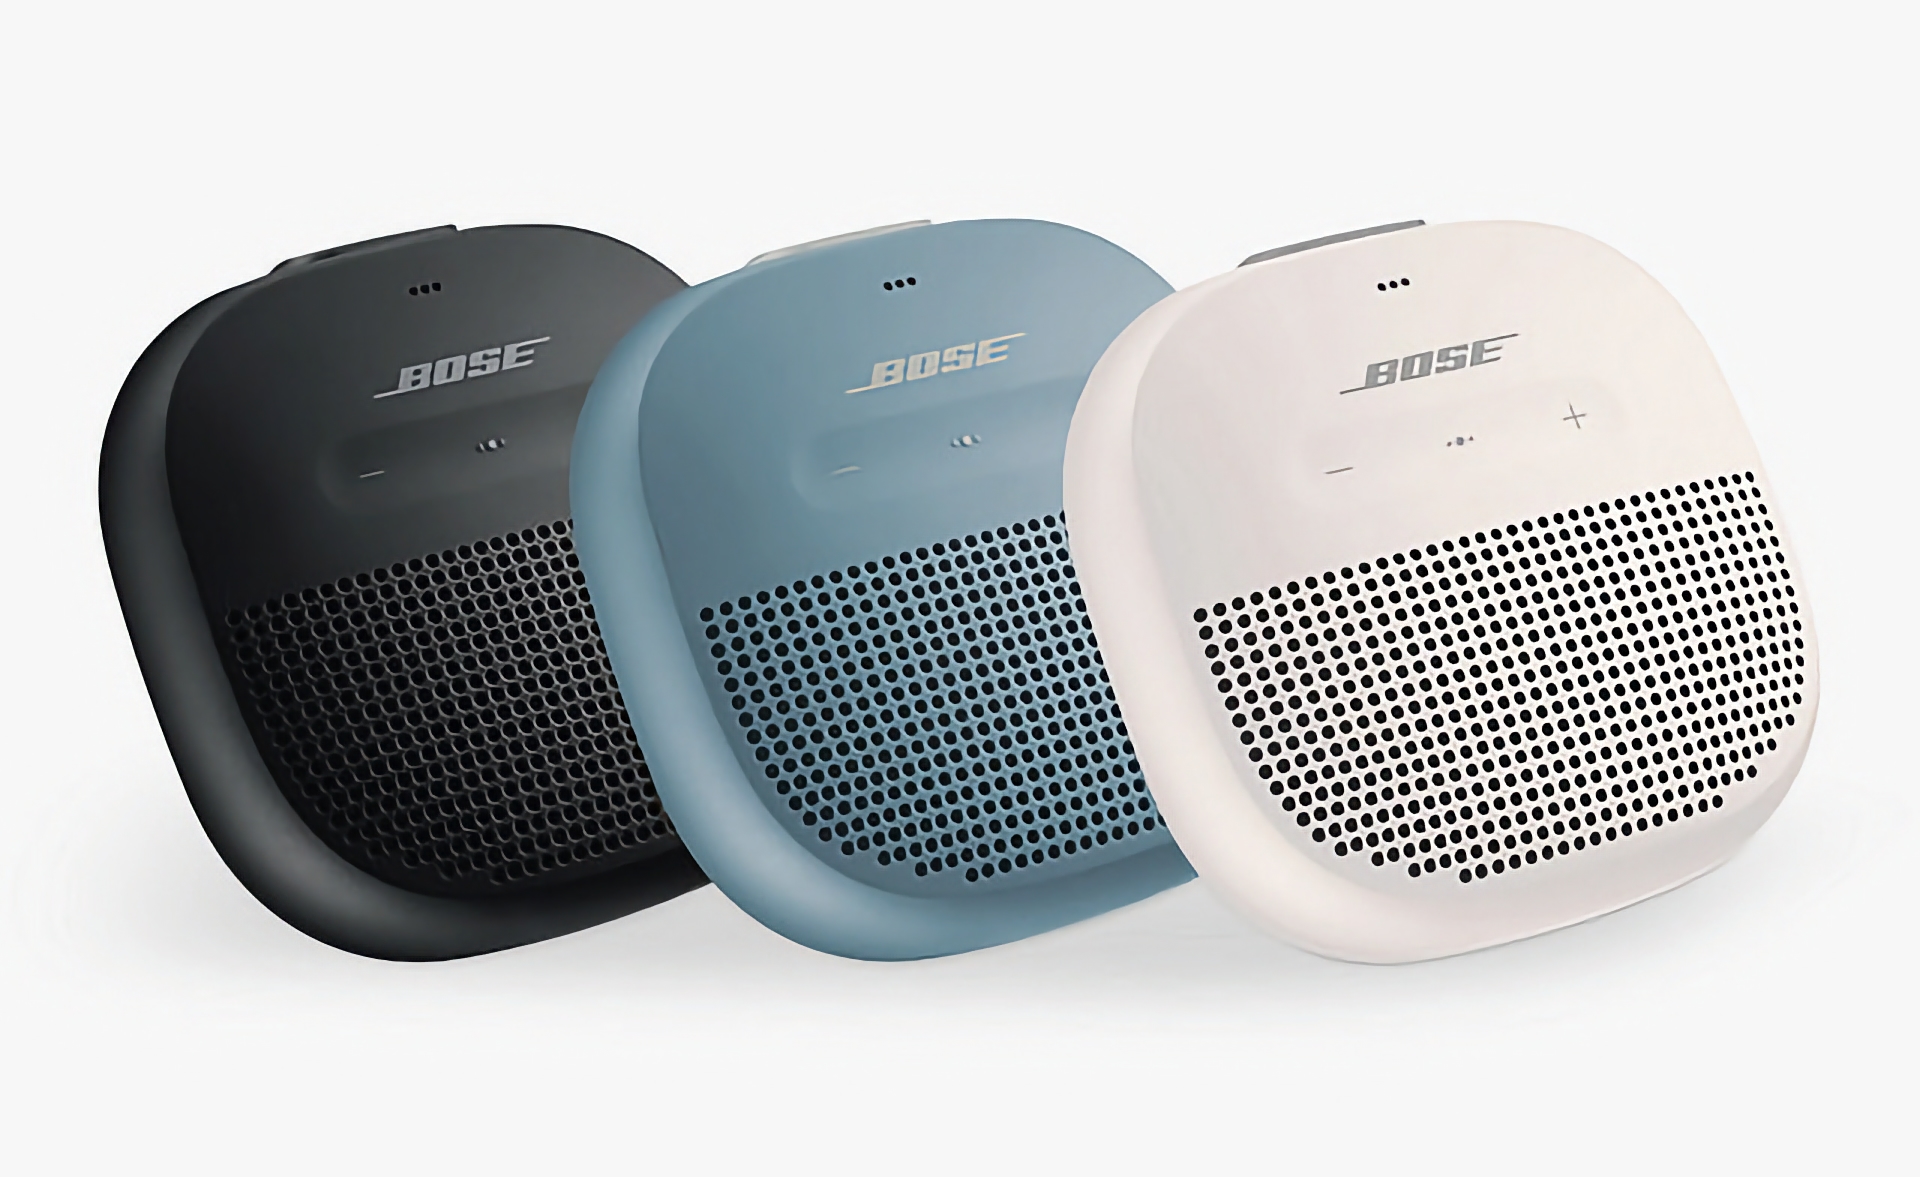 Bose SoundLink Micro met IP67-bescherming en een batterijlevensduur tot 6 uur is verkrijgbaar bij Amazon voor $99 (korting van $20)